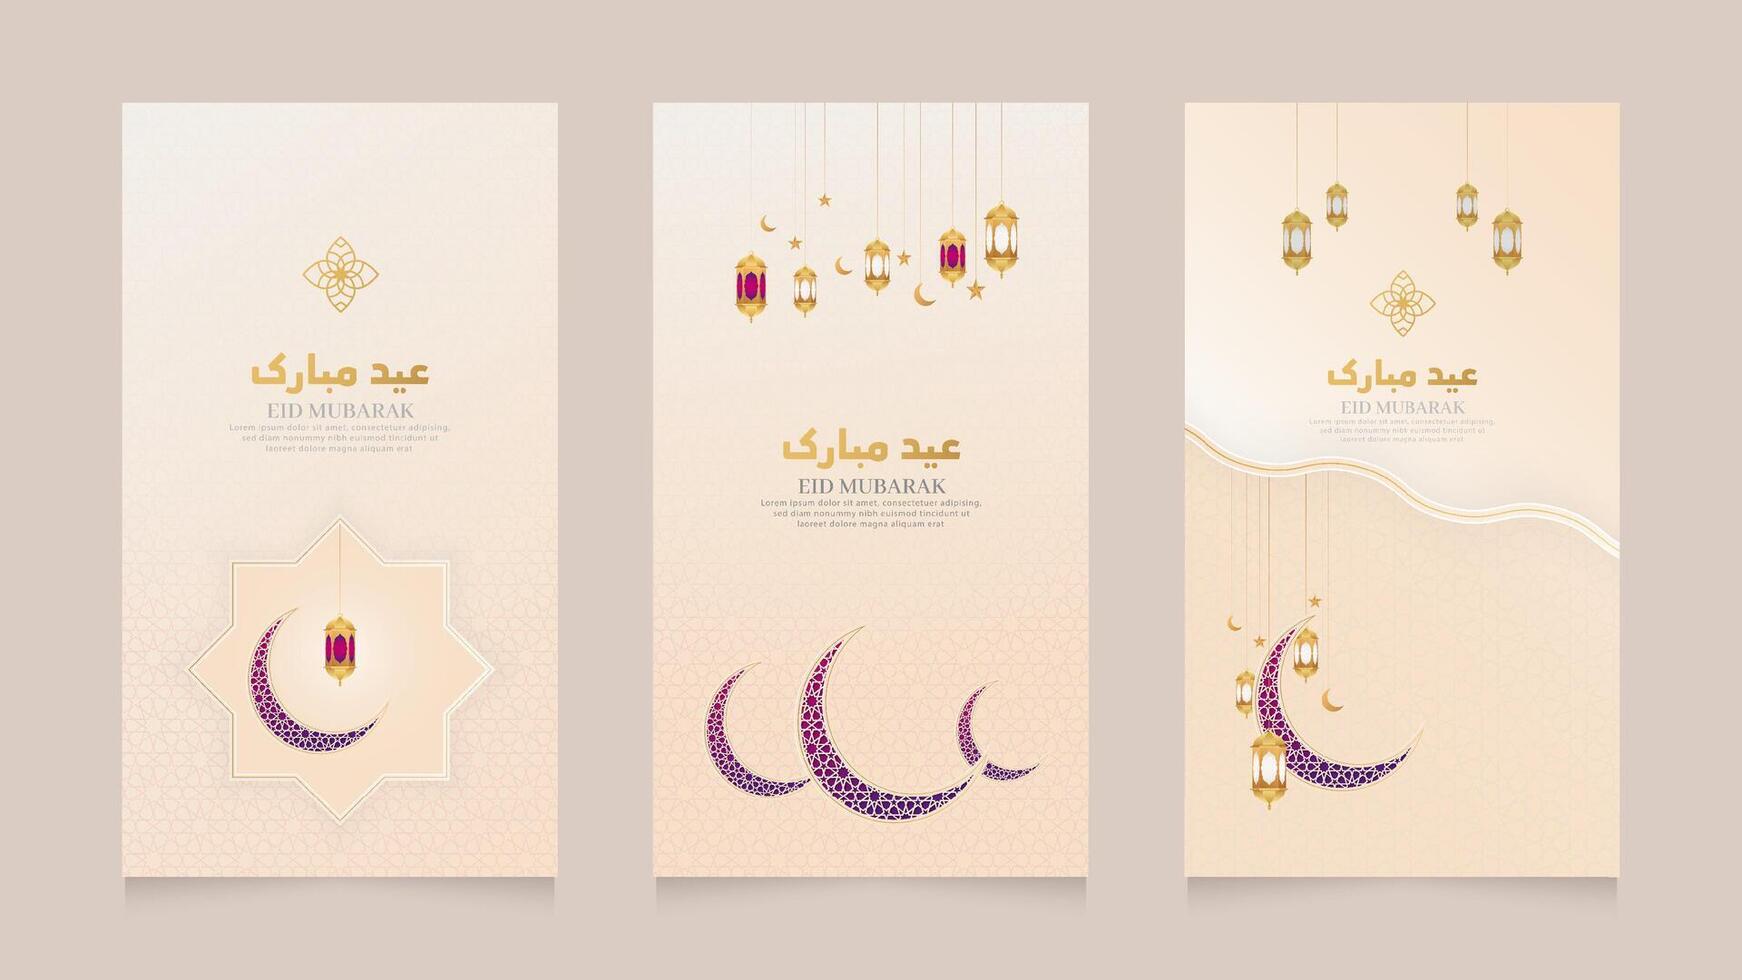 islamisch Arabisch realistisch Sozial Medien Geschichten Sammlung Vorlage mit Halbmond Mond zum Ramadan kareem und eid Mubarak vektor